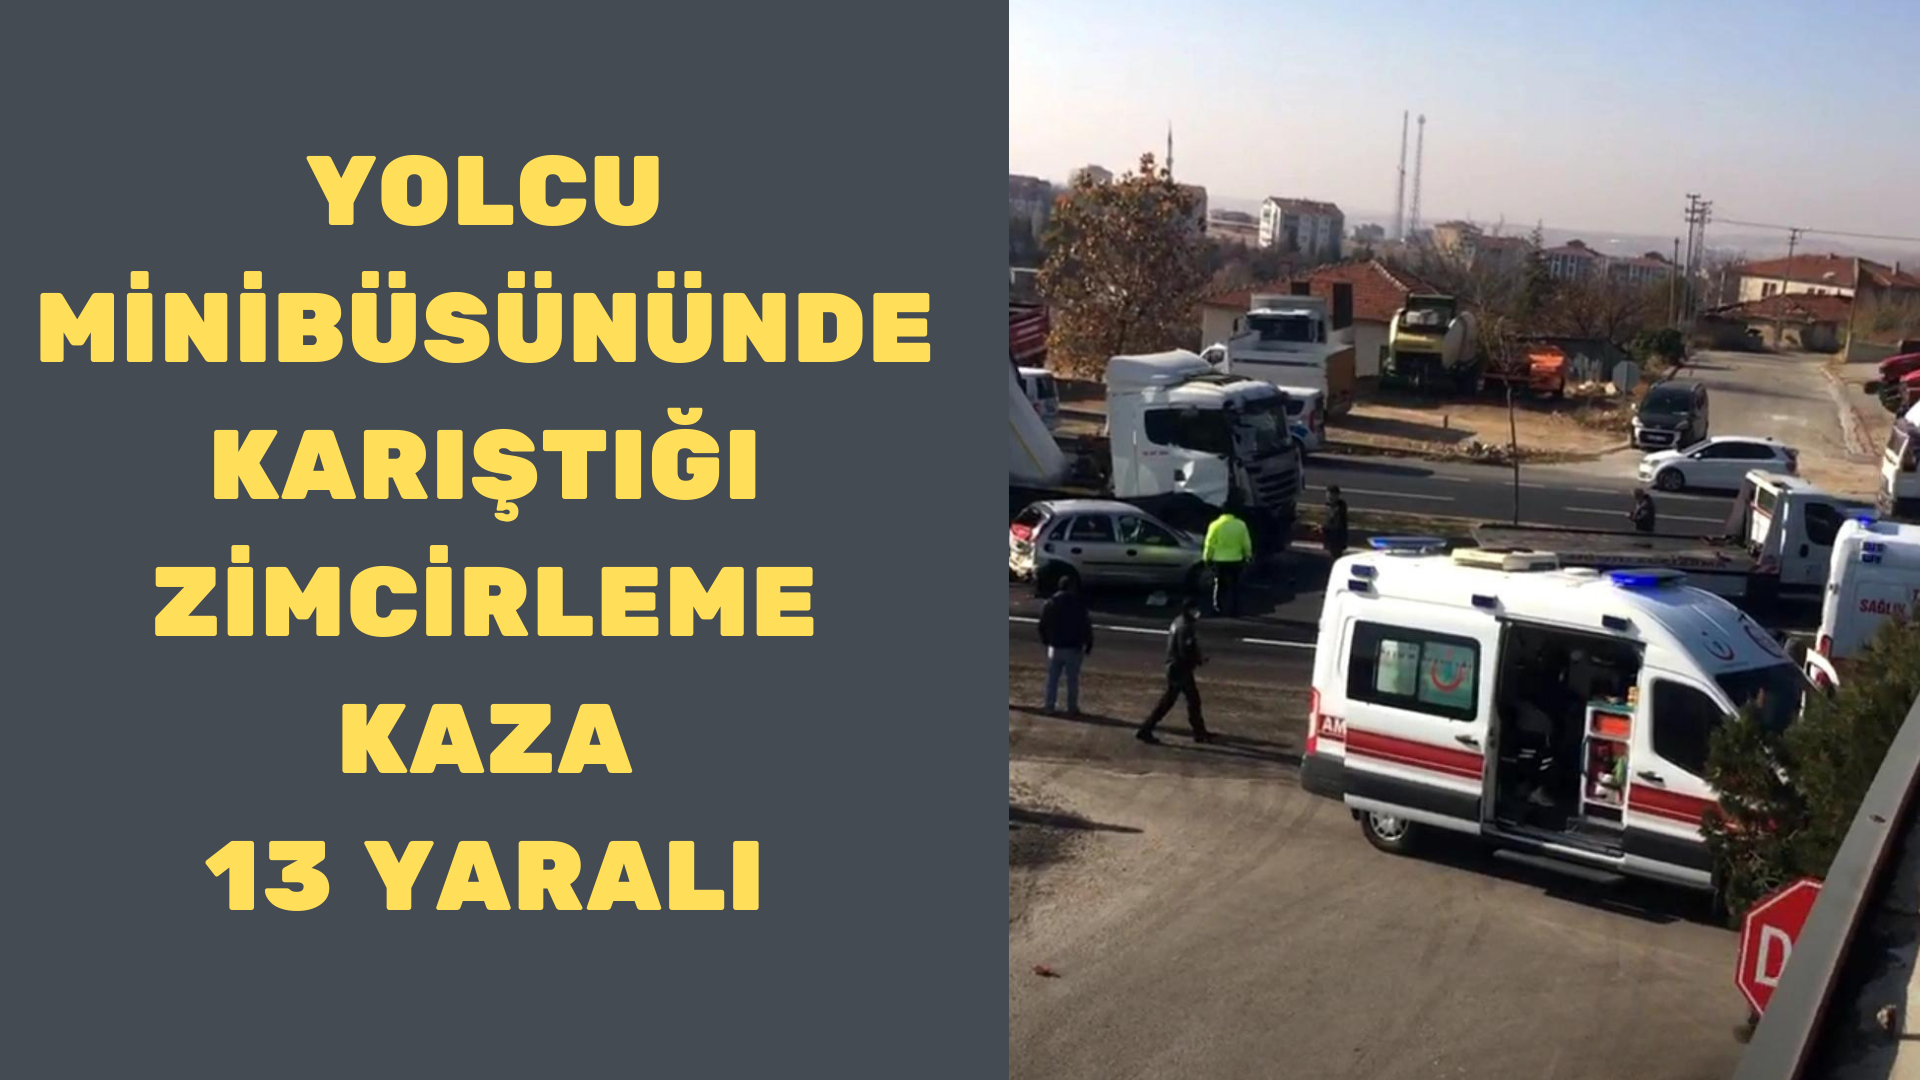 Kırşehir’de zincirleme kaza:13 yaralı